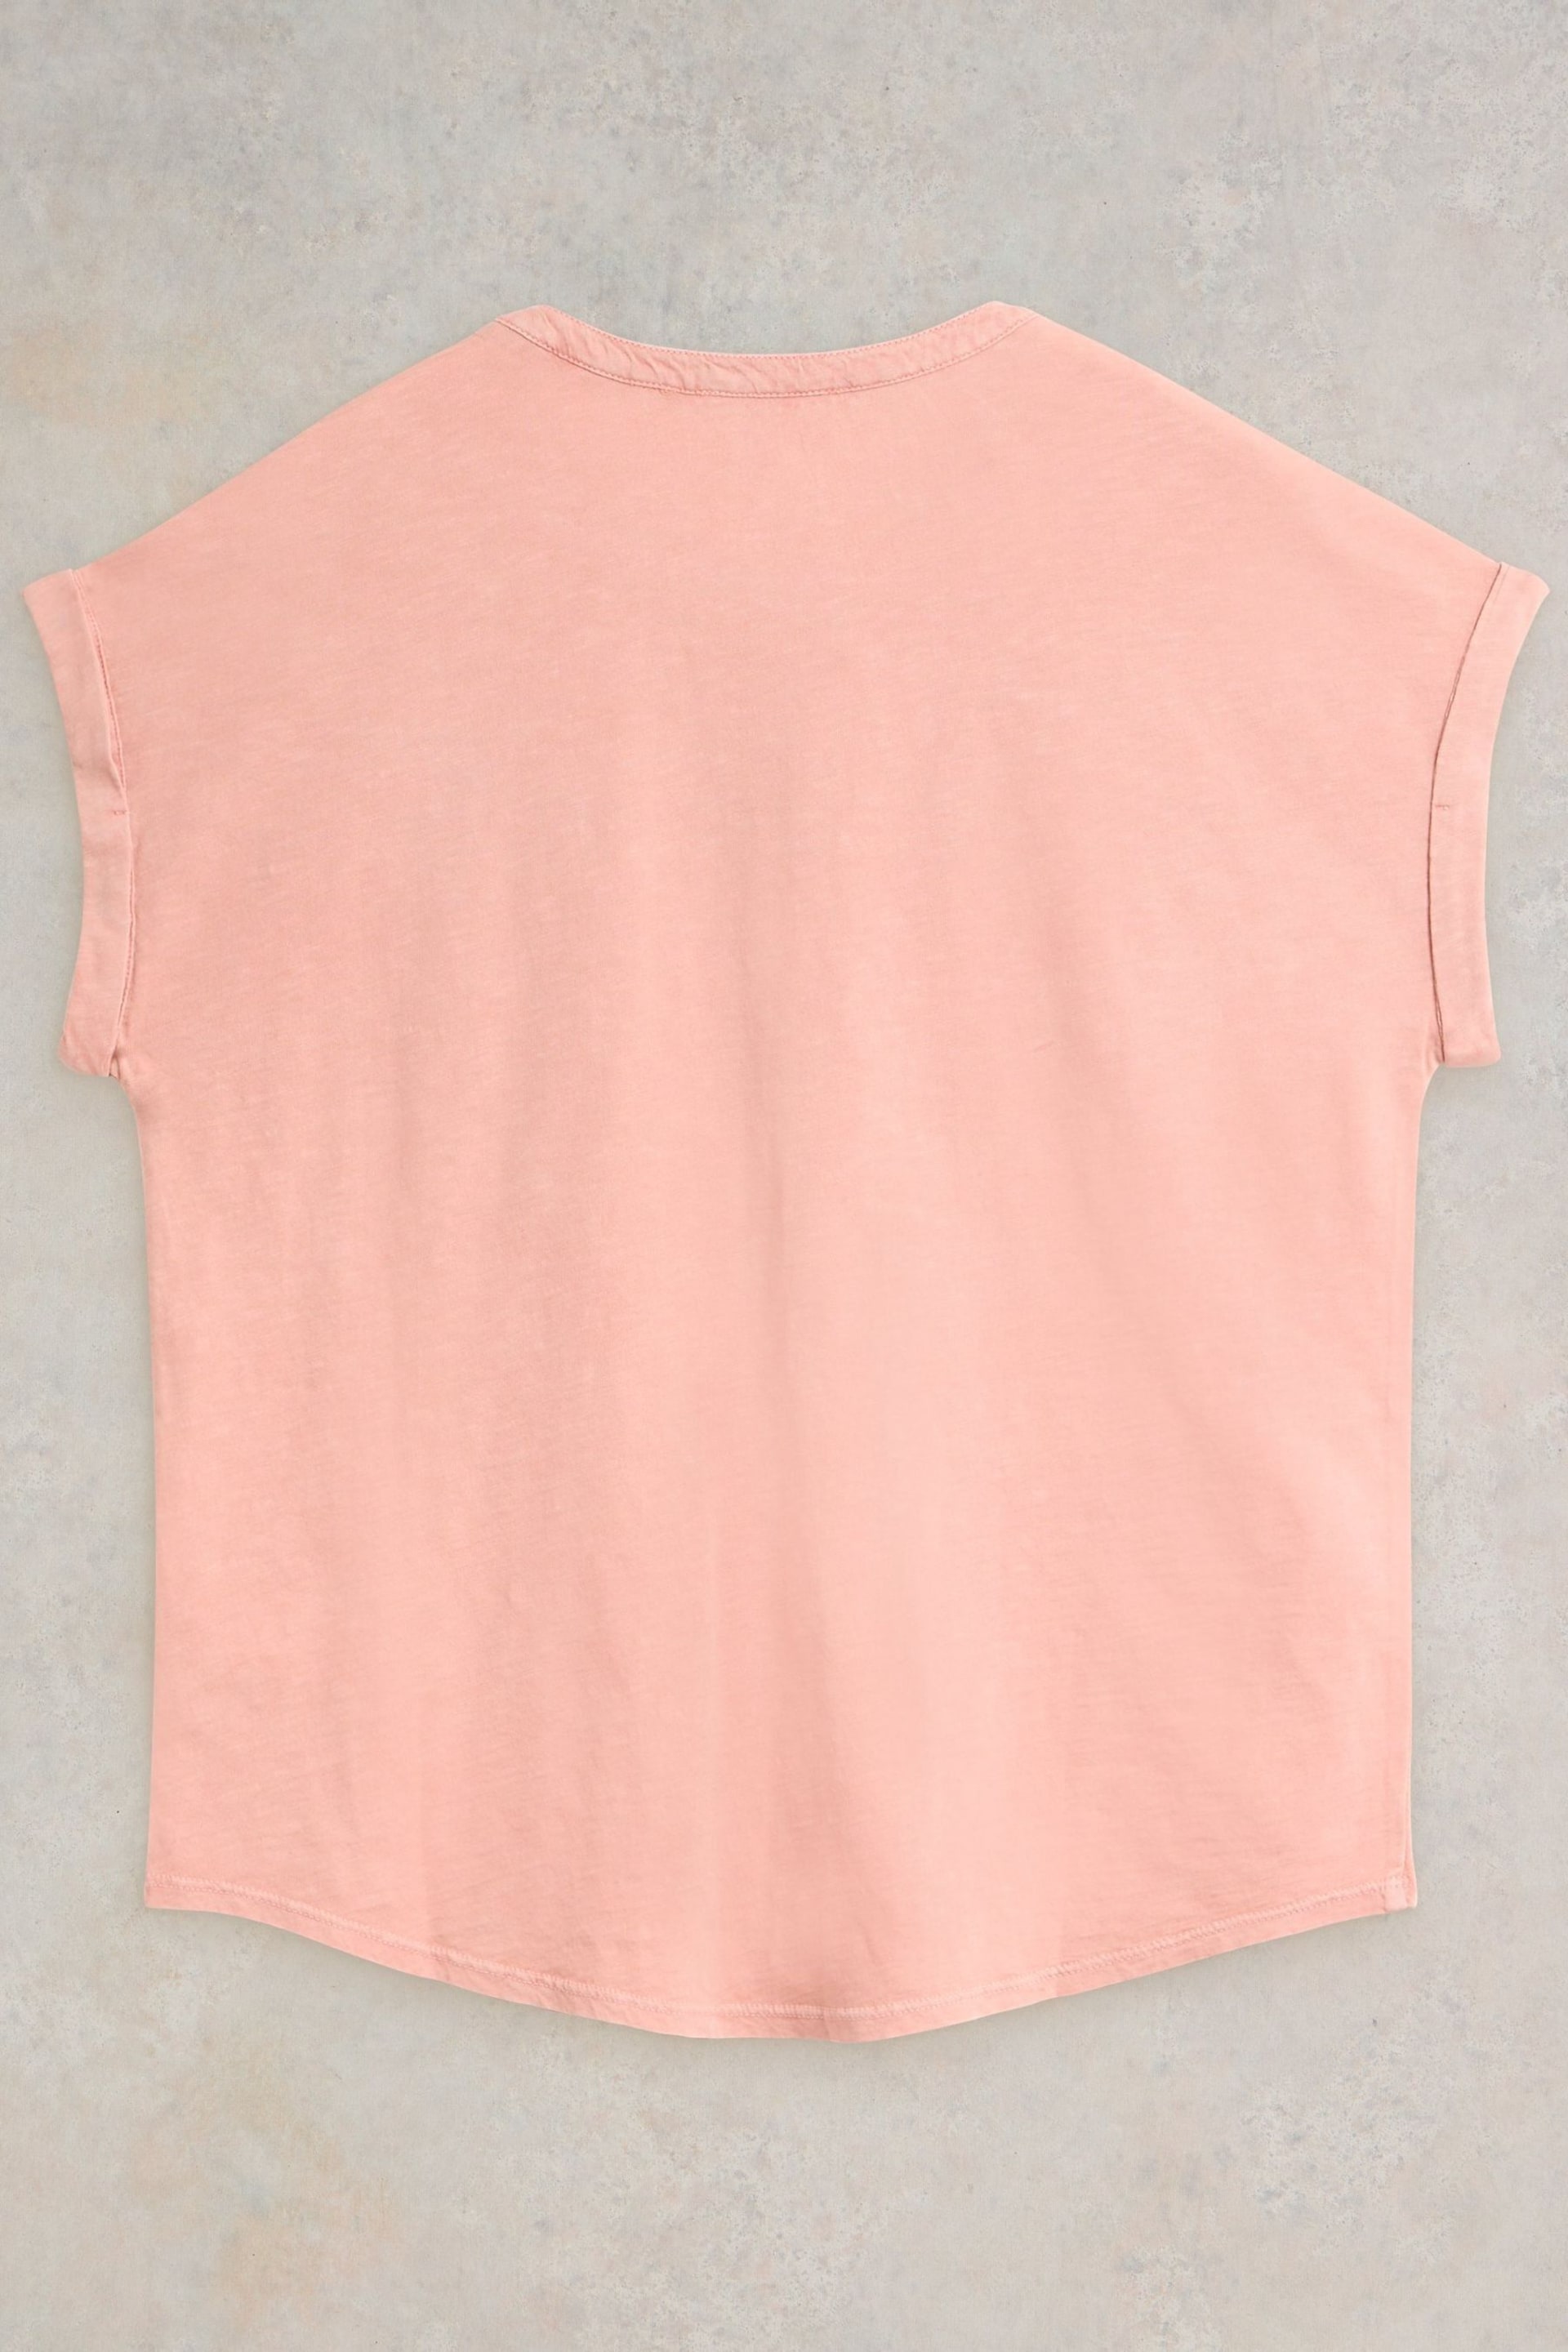 White Stuff Pink Beth Jersey Mix T-Shirt - Image 6 of 7